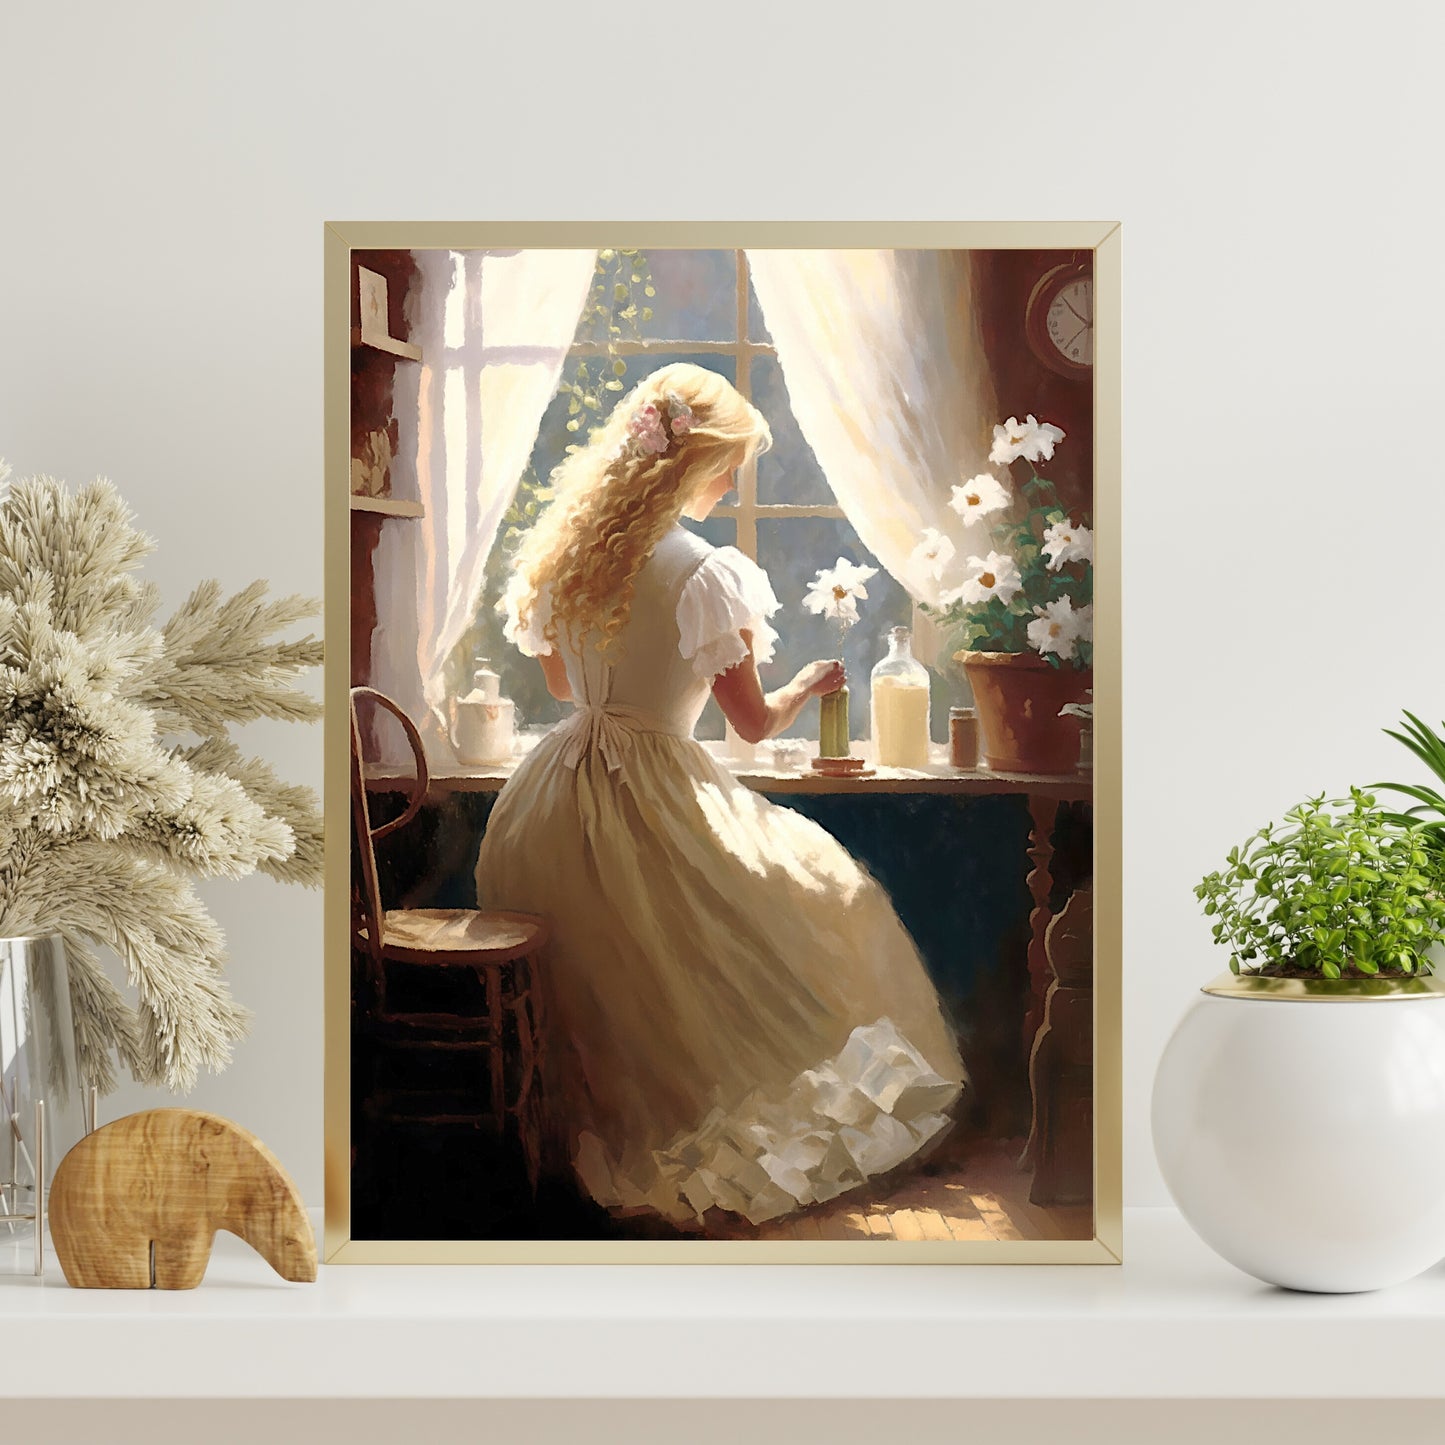 Antikes Porträt einer arbeitenden Frau, Papierposter, Drucke, Vintage-Ölgemälde und Wandkunst einer viktorianischen Frau, die vor einem Fenster arbeitet, Vintage-Wandkunst